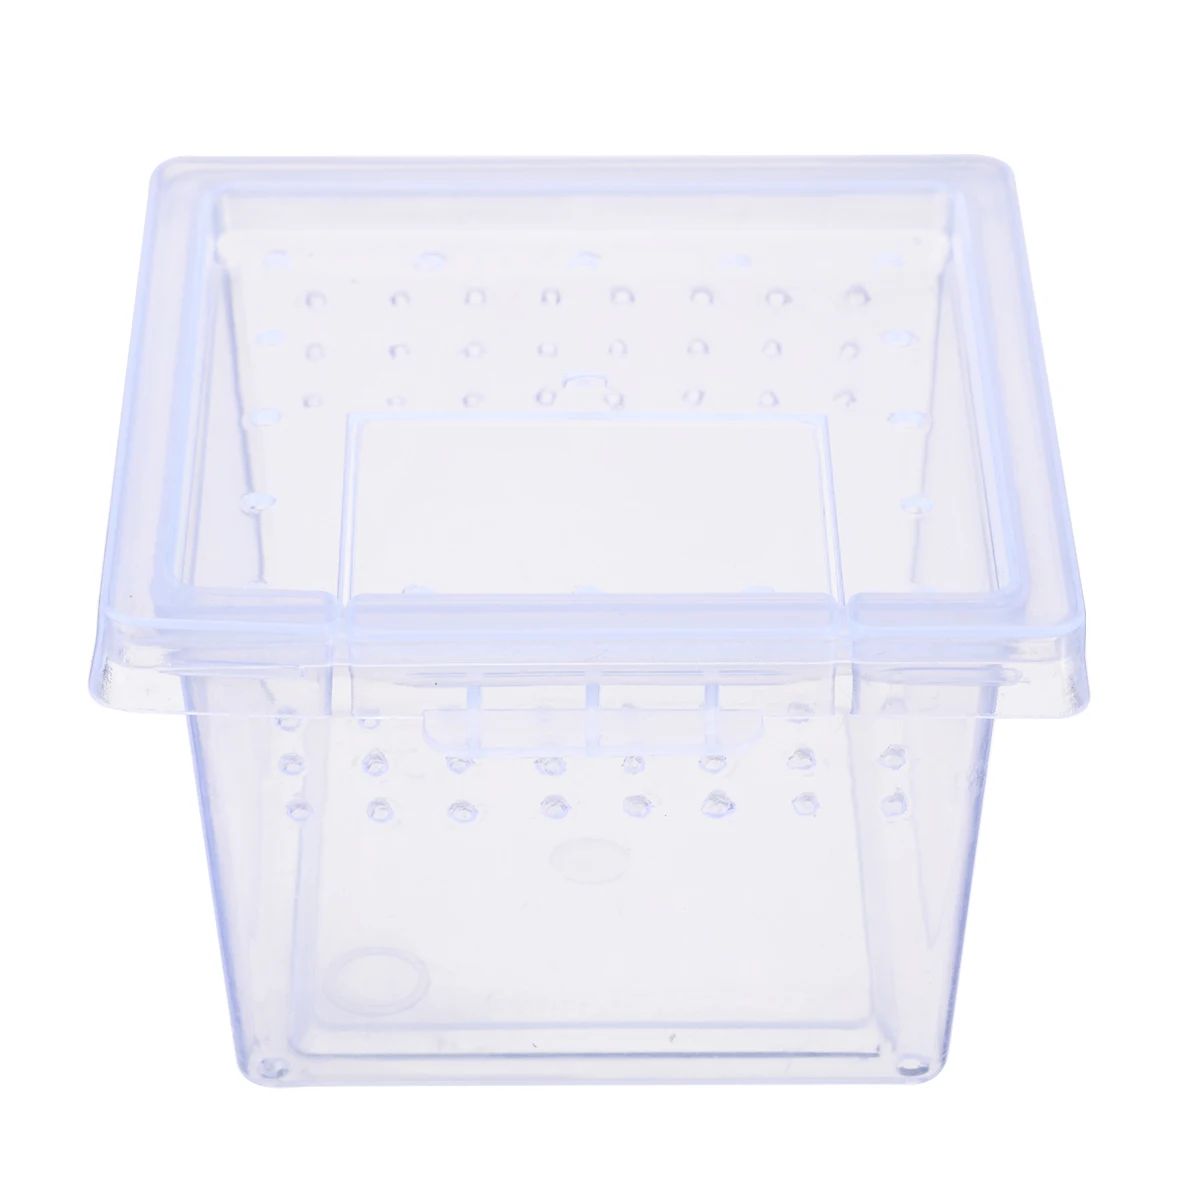 6,8*4,5*5,5 см прозрачный ящик для корма в виде паука, пластиковый ящик для насекомых, рептилий, контейнер для выращивания скорпионов, террариума